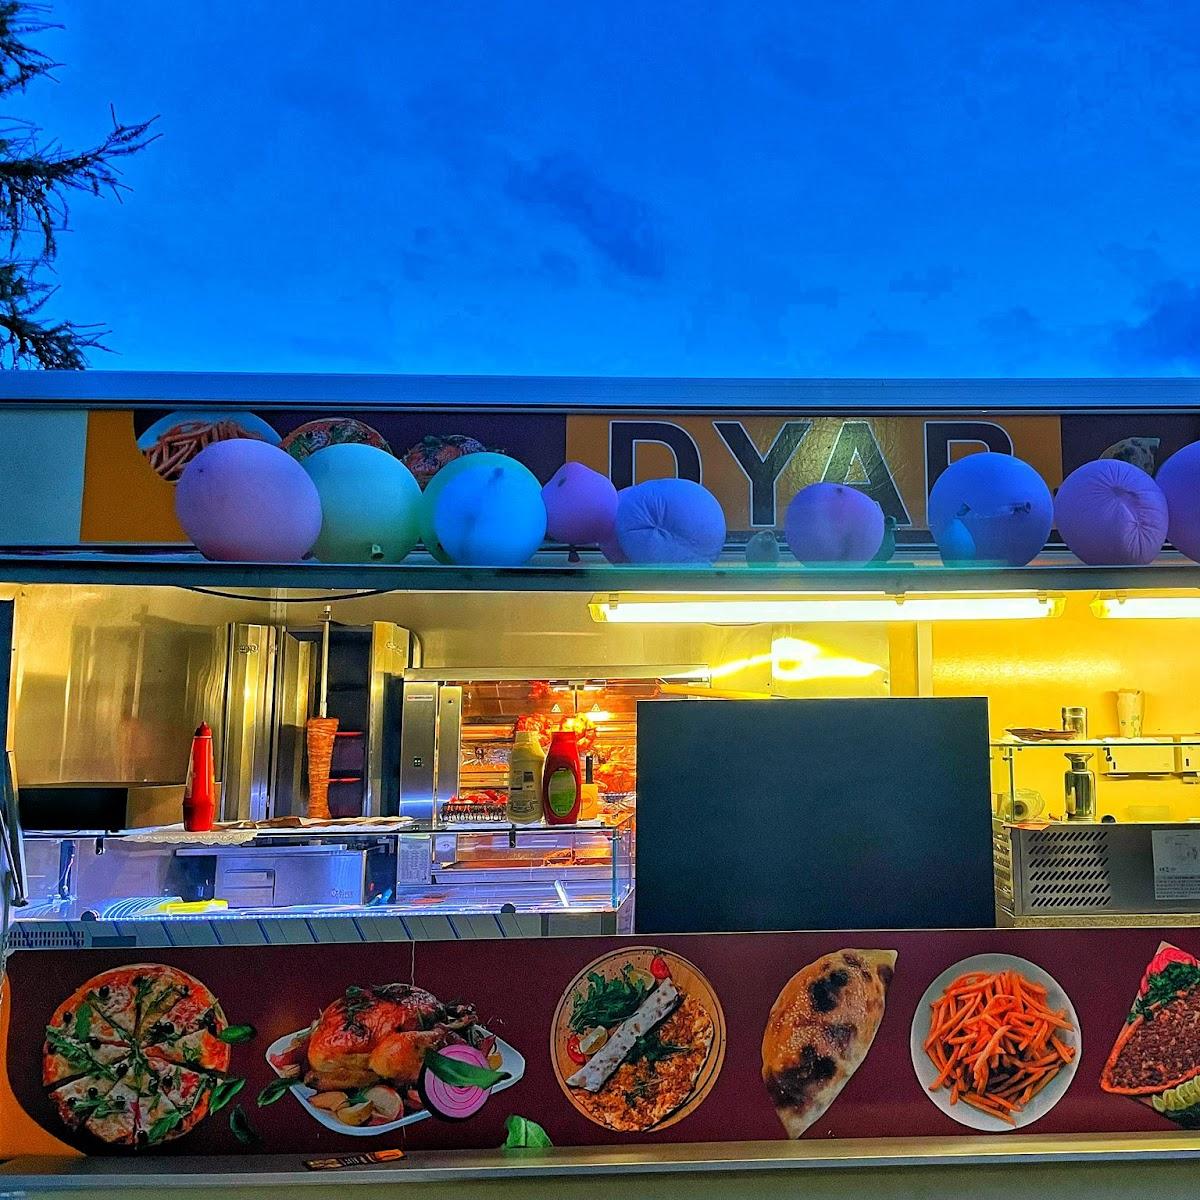 Restaurant "Orientalisches essen DYAR" in Münsingen